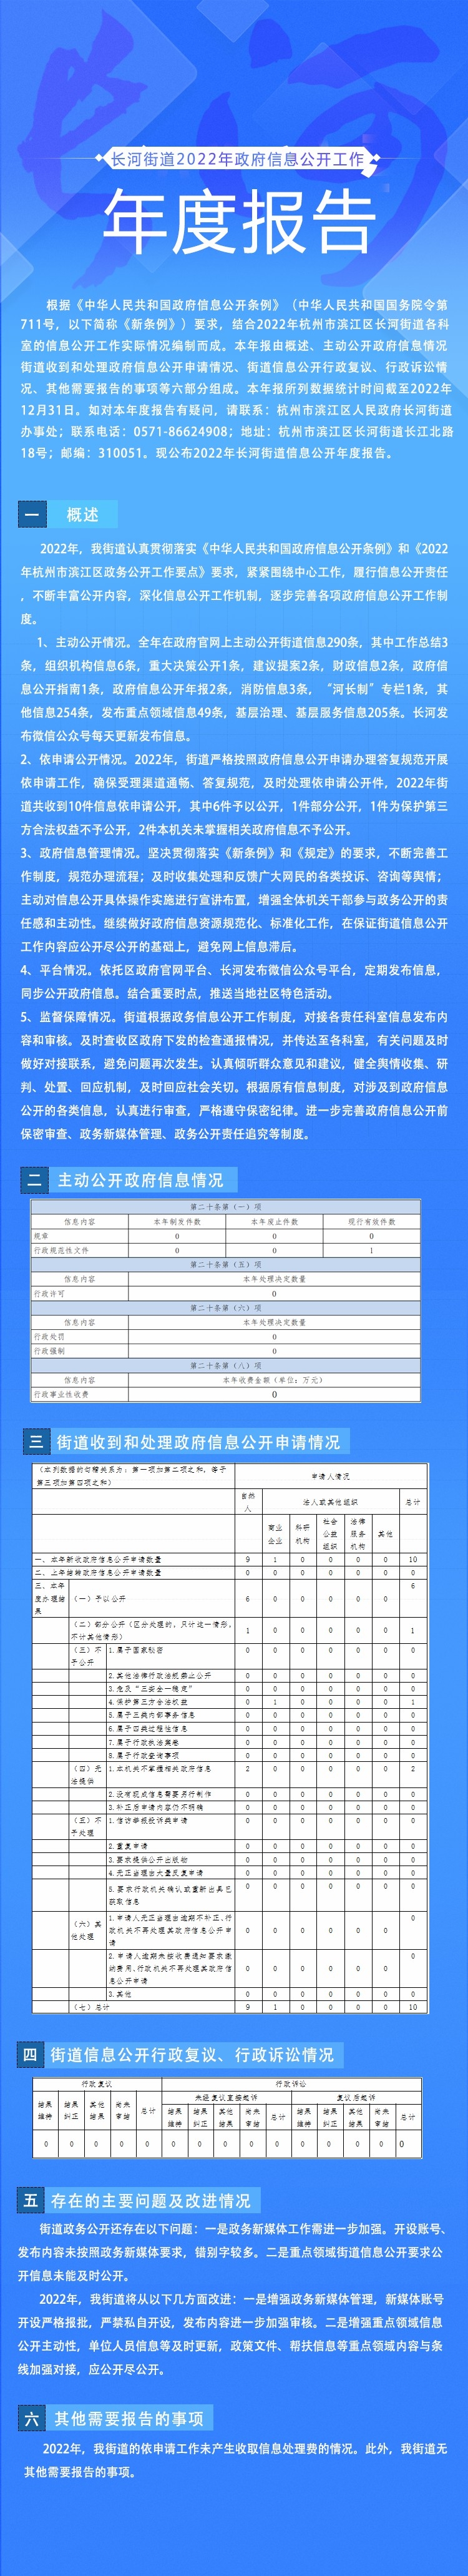 22年度长河政务信息公开报告图解(改)~1.jpg